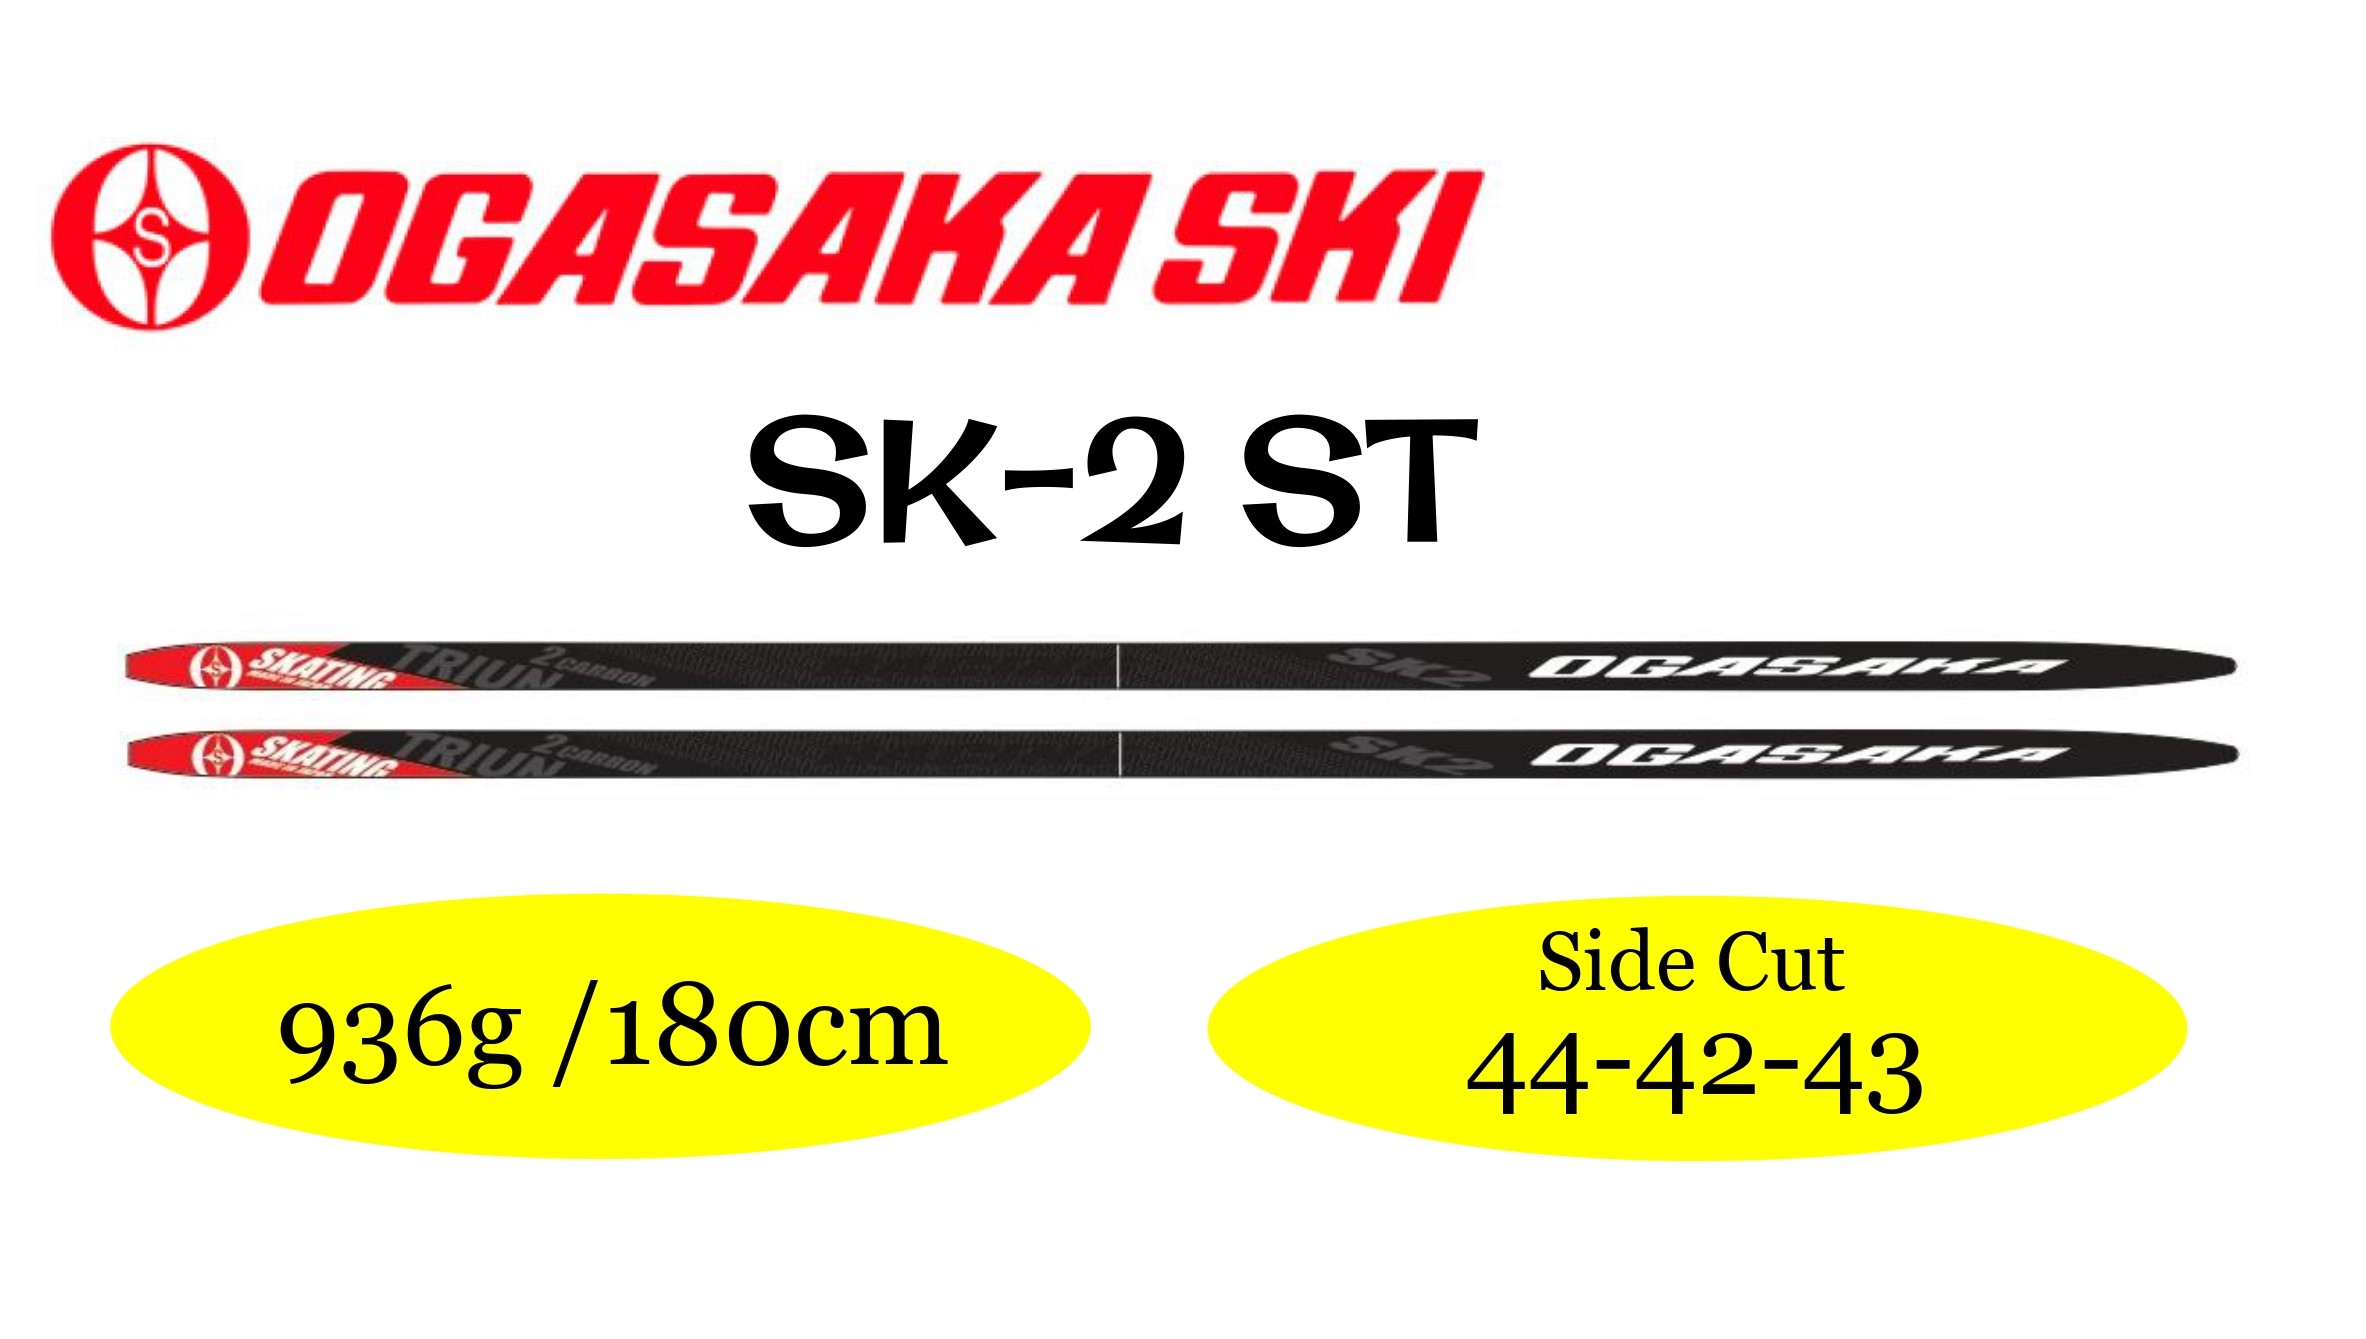 ニッセンスポーツ / 【50%off】 OGASAKA [オガサカ] SK2-ST 10382 